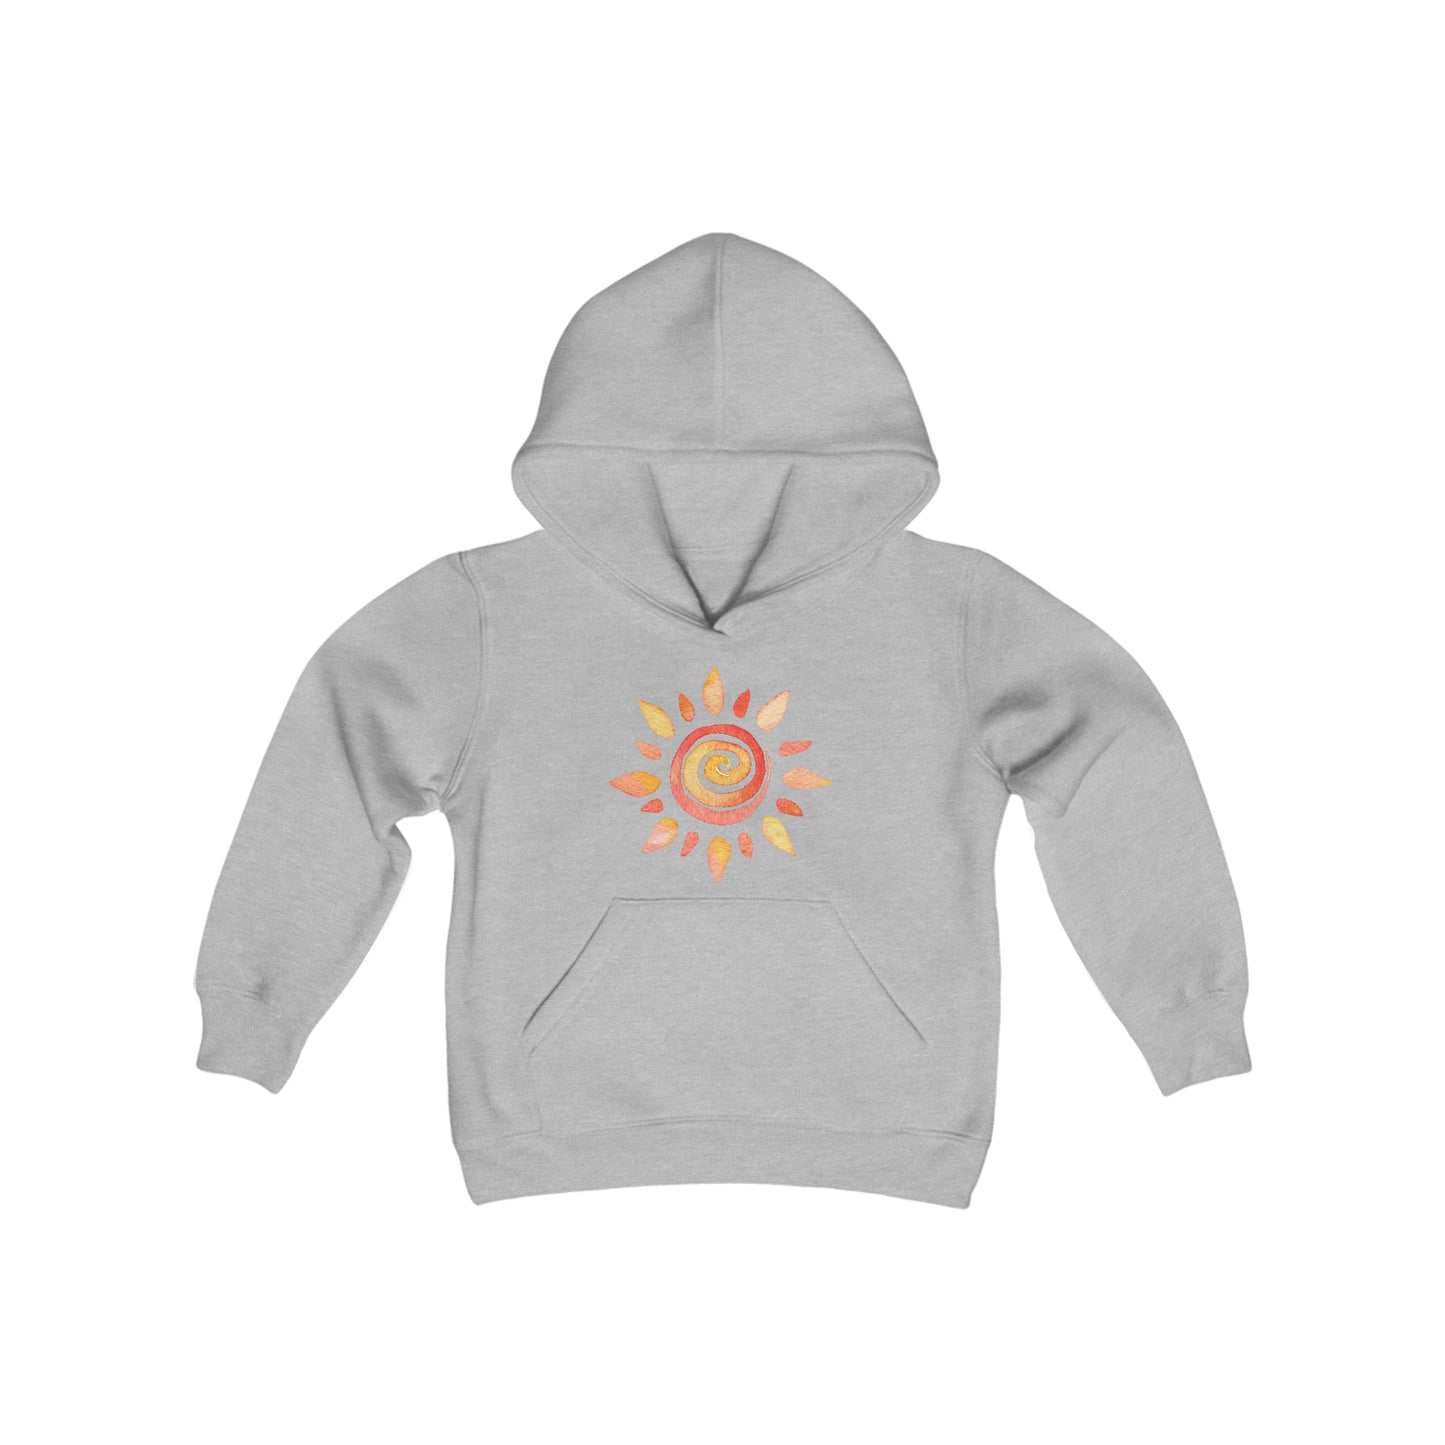 Watercolor Sun - Youth Heavy Blend Hooded Sweatshirt